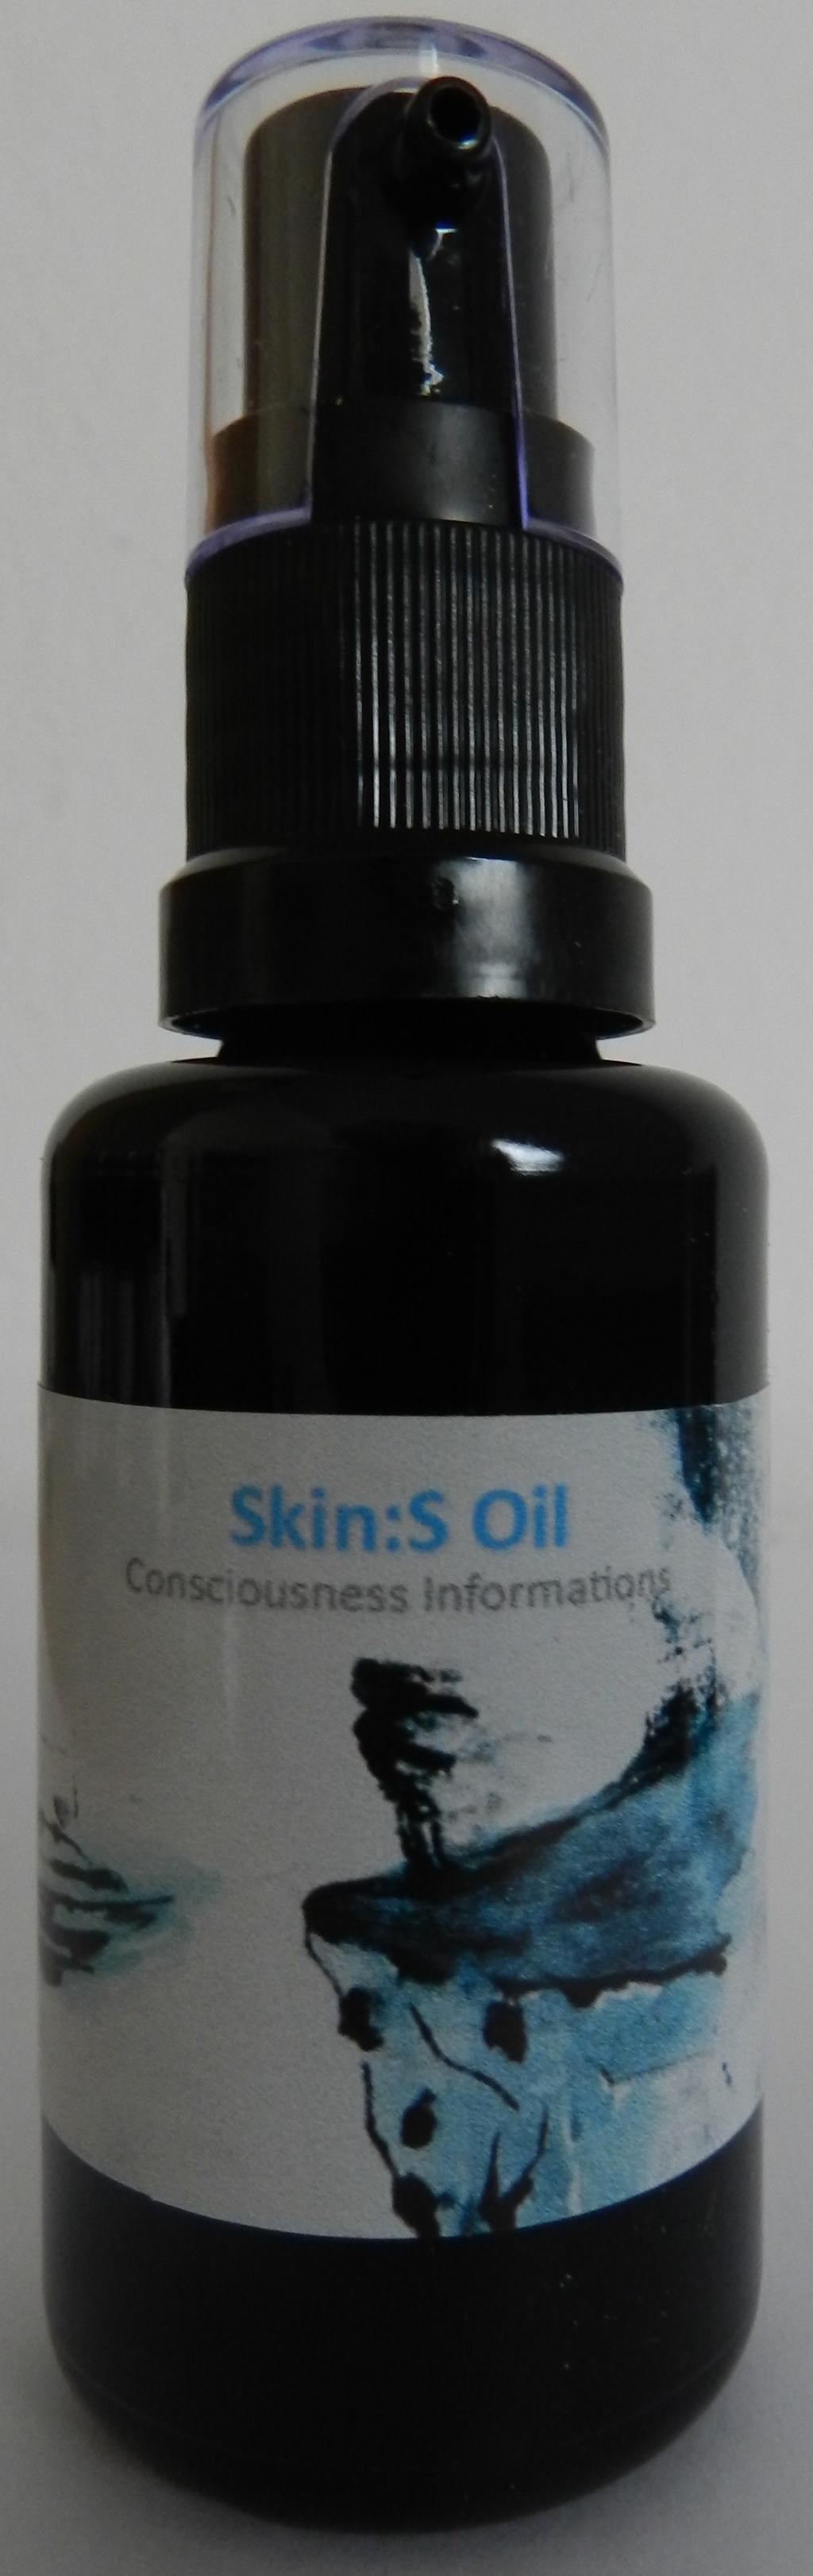 Skin:S Oil unterstützt deine Haut bei Disbalancen wie Narben, Hautunreinheiten, Neurodermitis. Es gleicht aus, pflegt und regeneriert die Zelle.